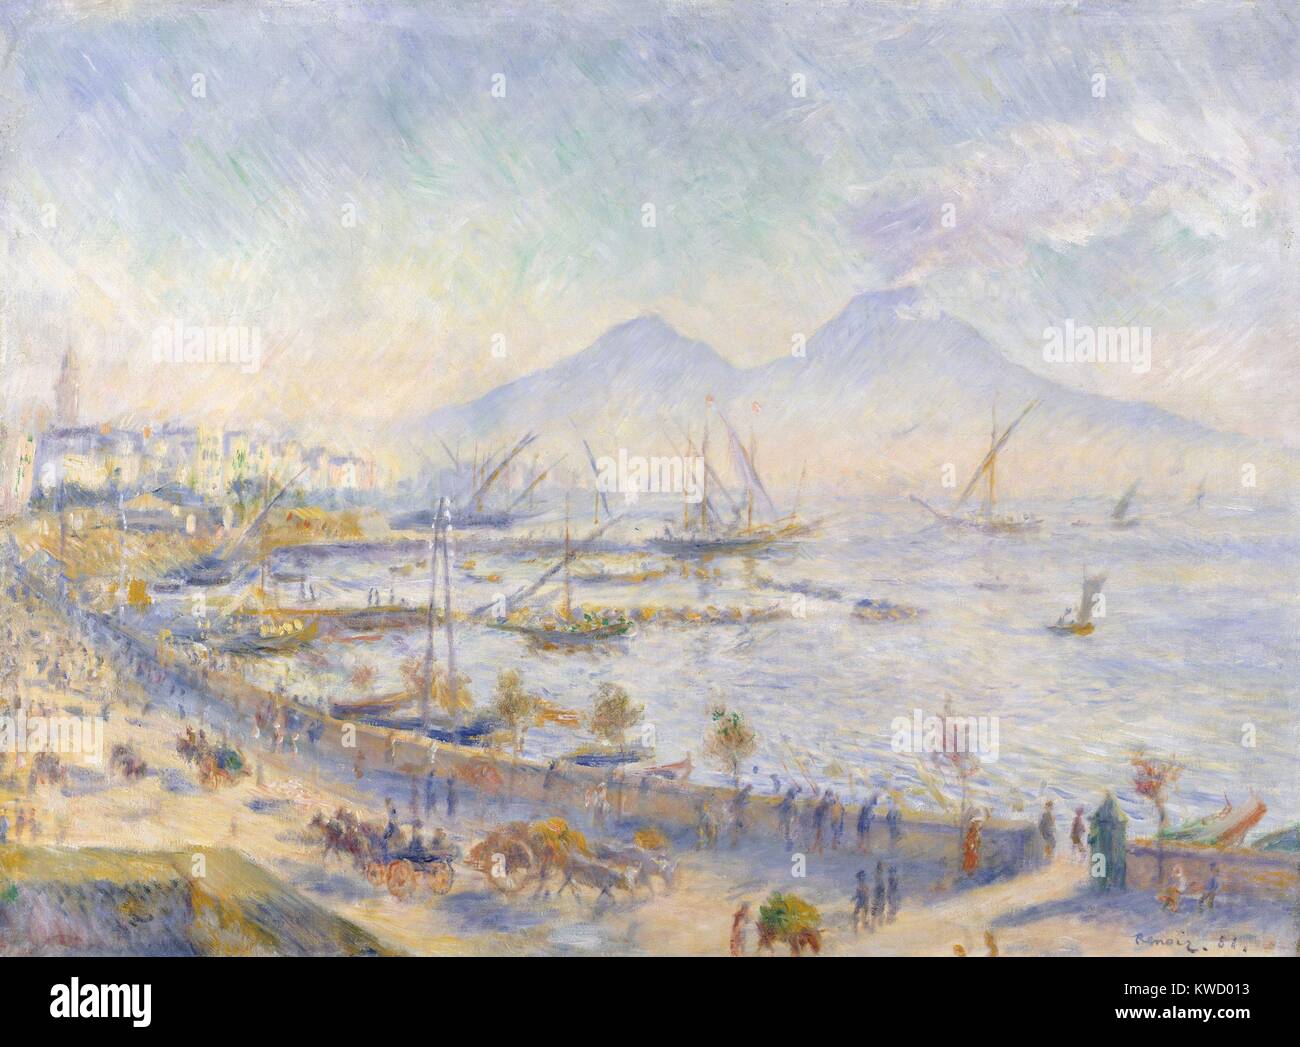 La baia di Napoli da Auguste Renoir, 1881, impressionista francese pittura, olio su tela. Questa luce del sole bagnata vista di Napoli include il vulcano Vesuvio (BSLOC 2017 3 88) Foto Stock